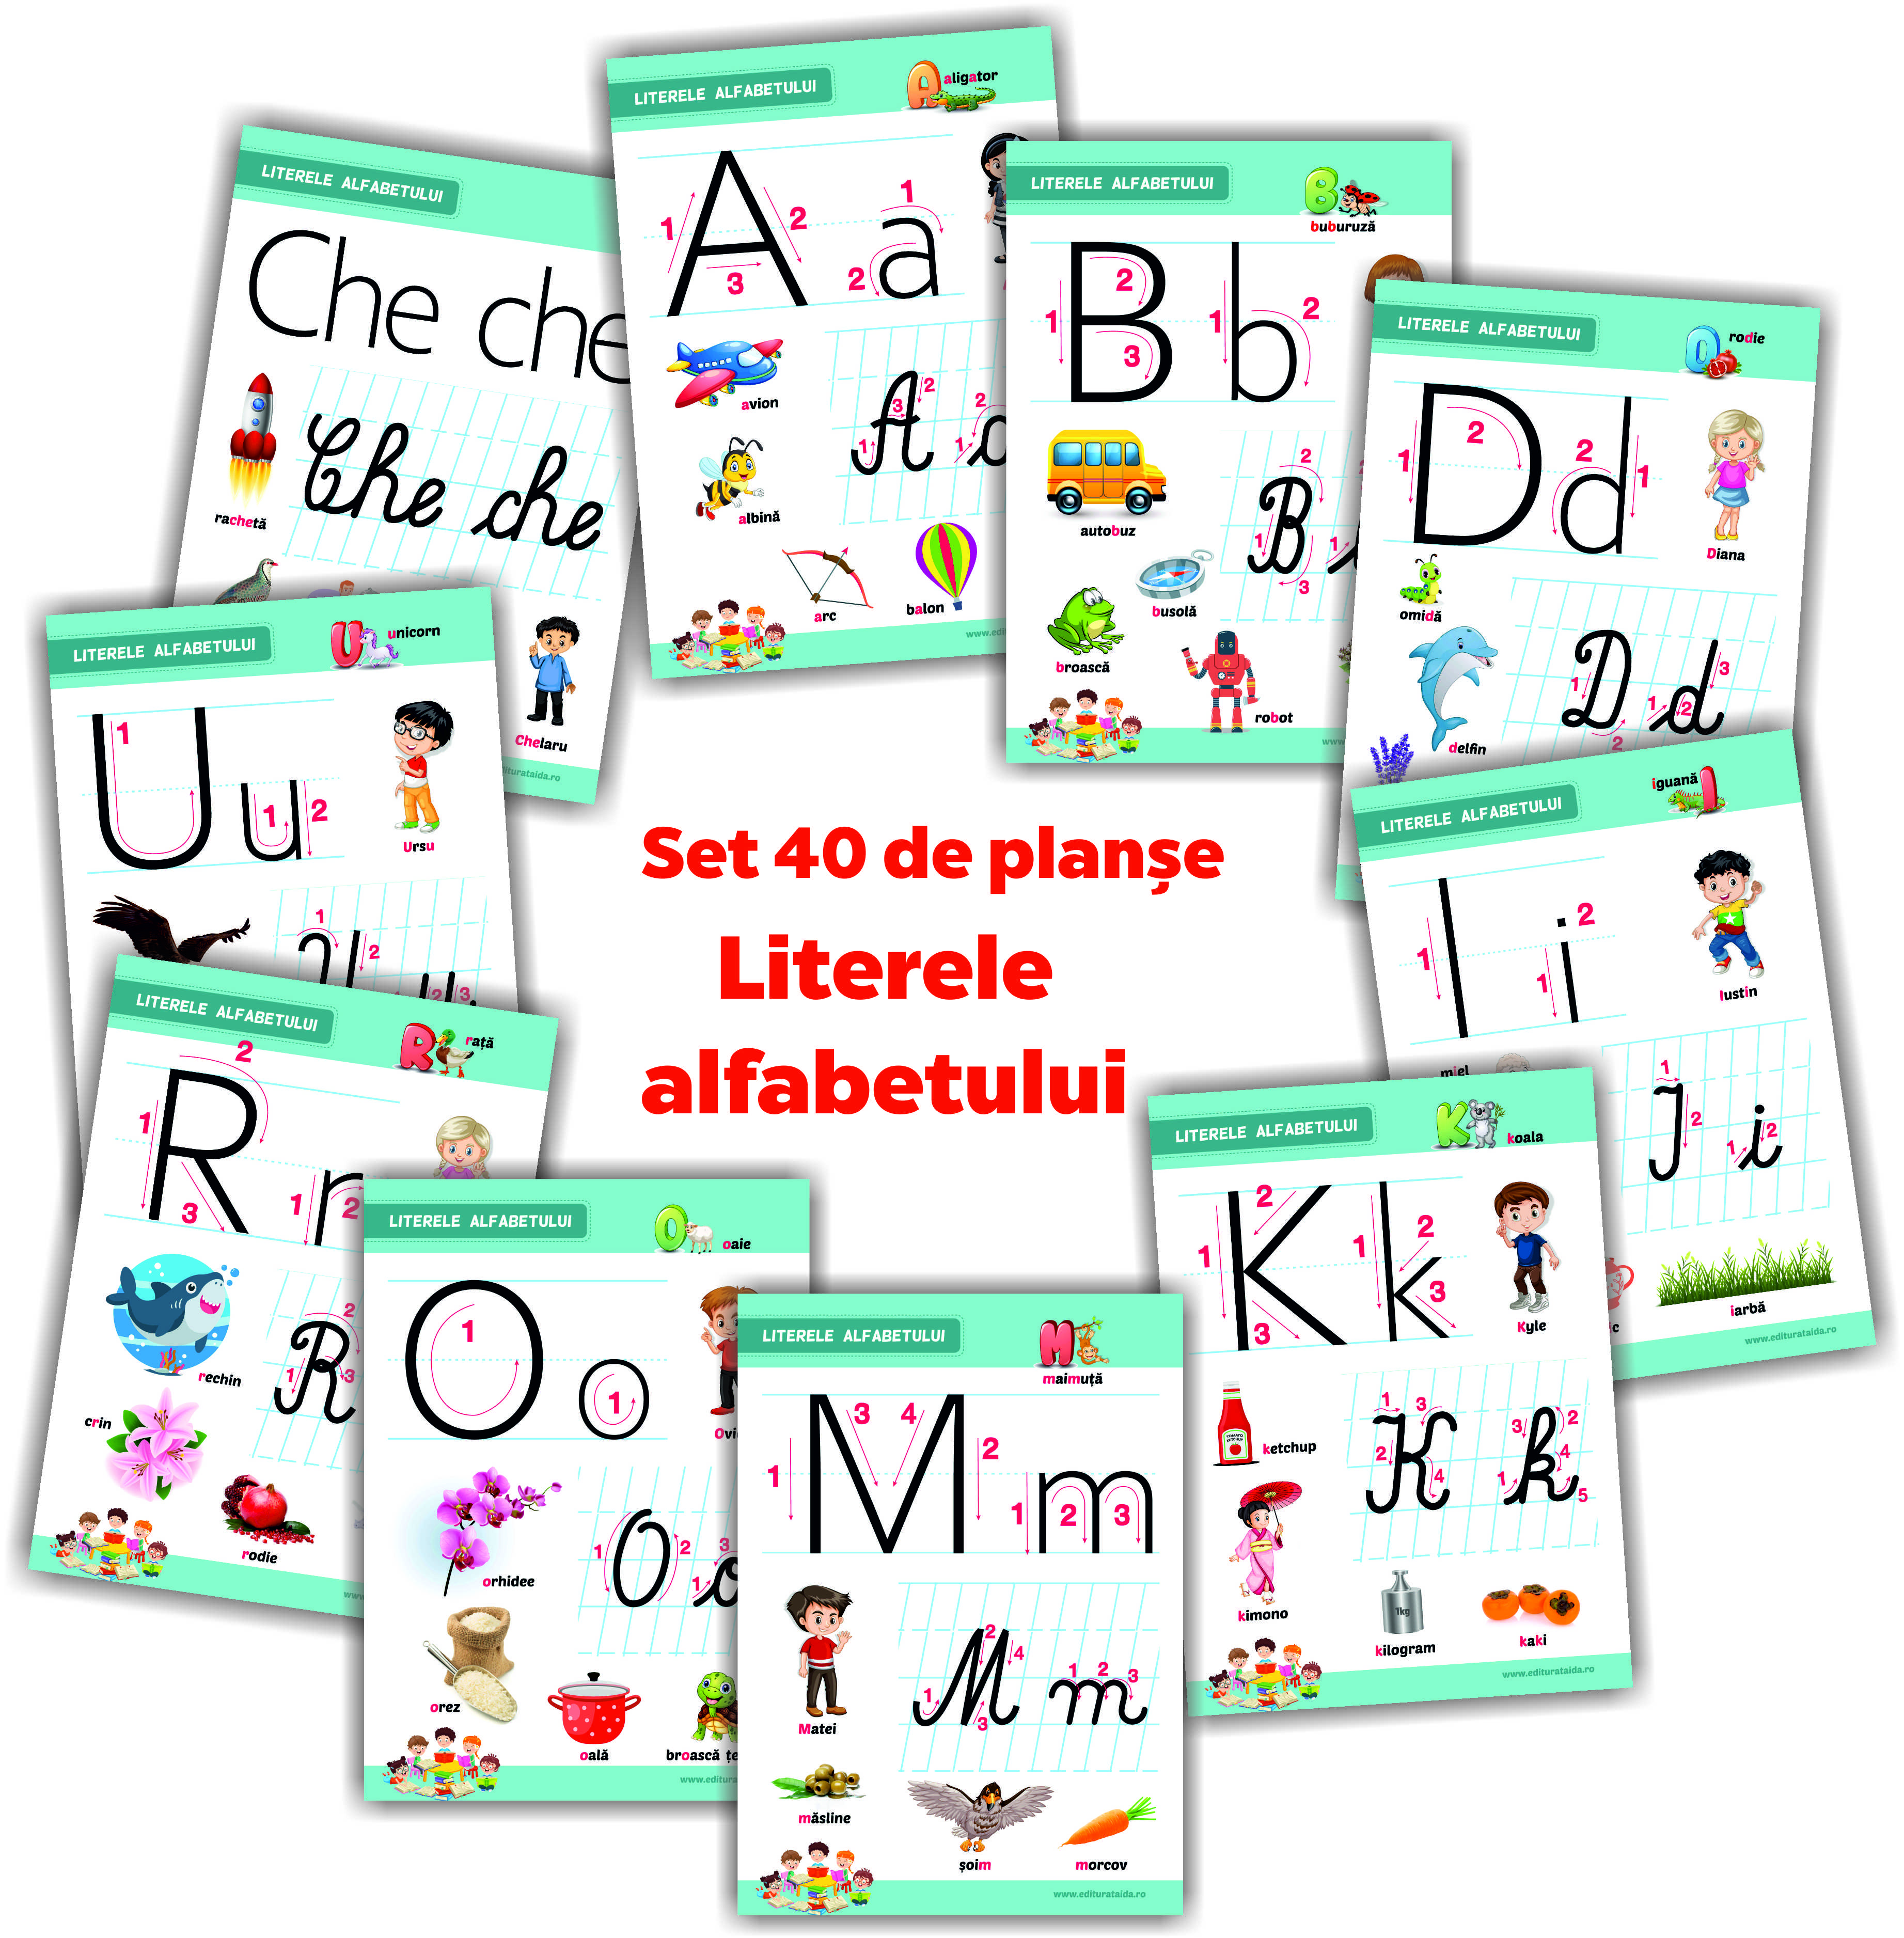 Literele alfabetului - set 40 de planșe didactice pentru clasa pregatitoare și pentru clasa I